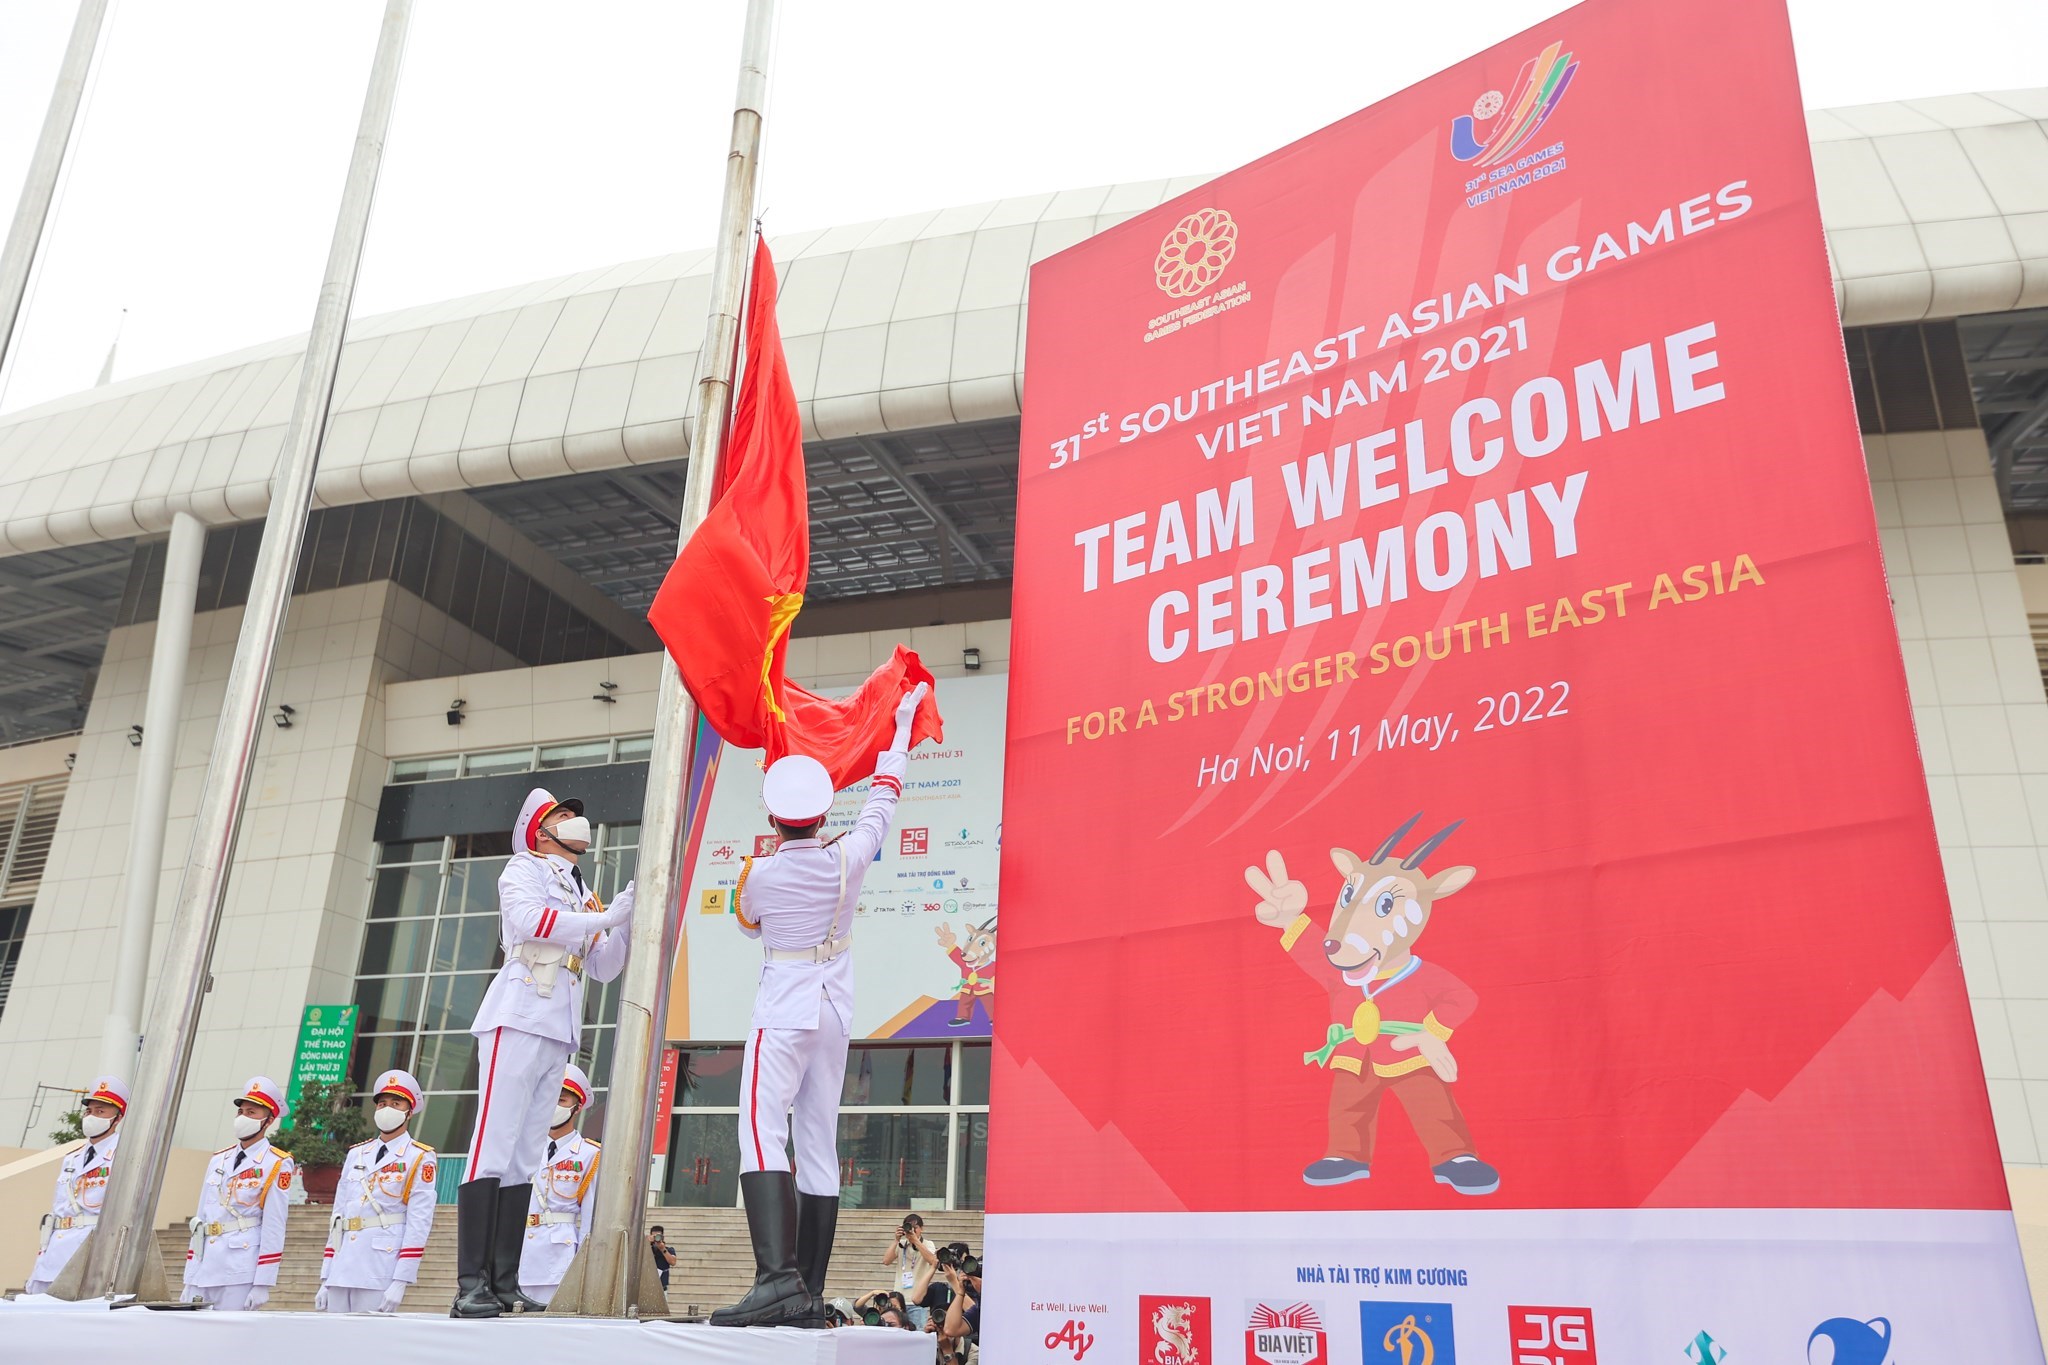 Đây là cơ hội để các quốc gia tại Đông Nam Á cùng giao lưu, tăng cường tình đoàn kết và đại diện cho quê hương thi đua kiệt sức.